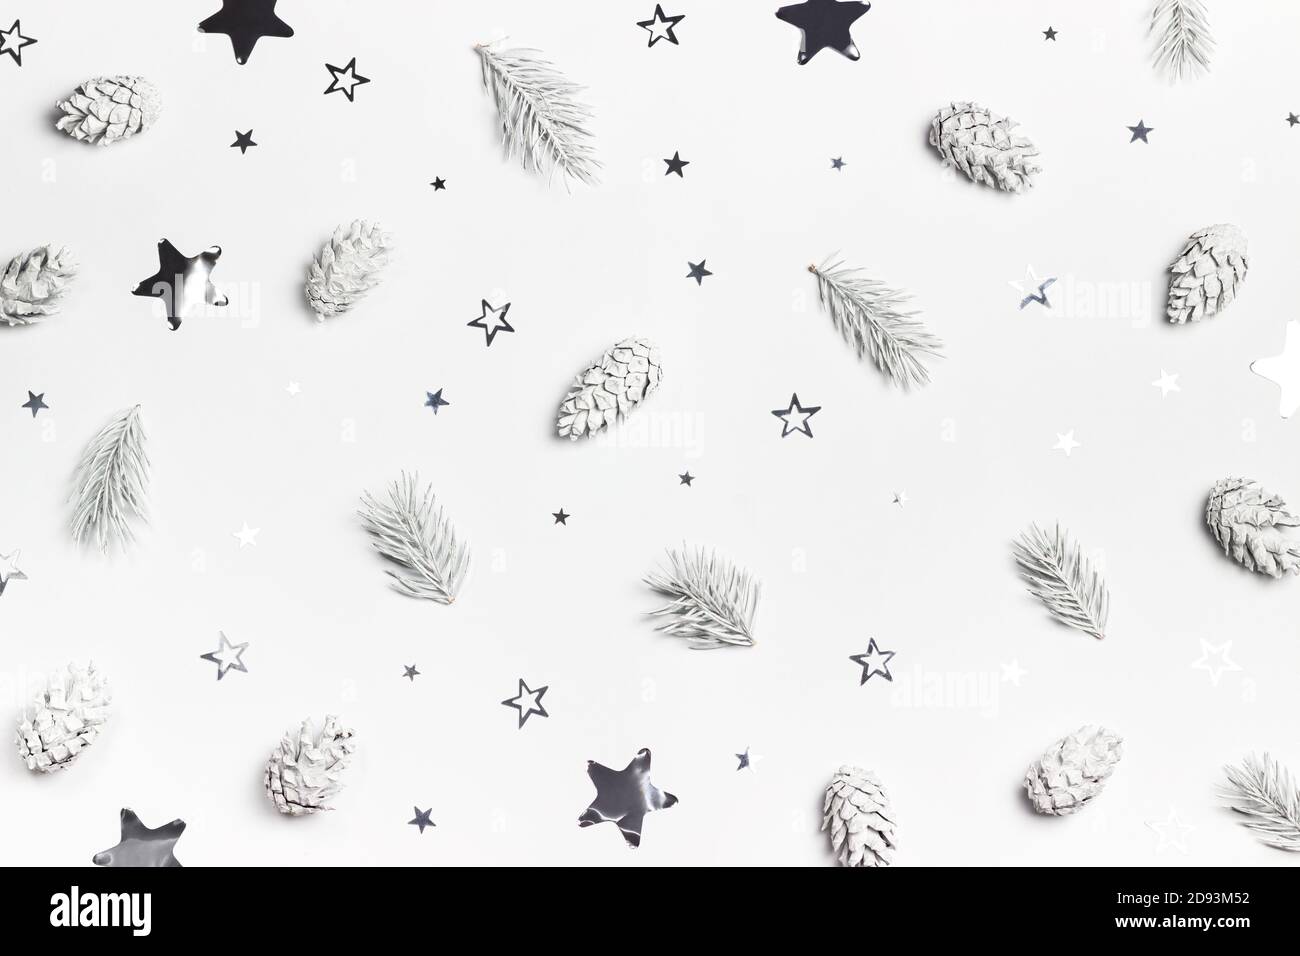 Weiße Weihnachten oder Neujahr Hintergrund mit Kiefern und silbernen Stern geformten Konfetti. Draufsicht. Flach liegend. Stockfoto